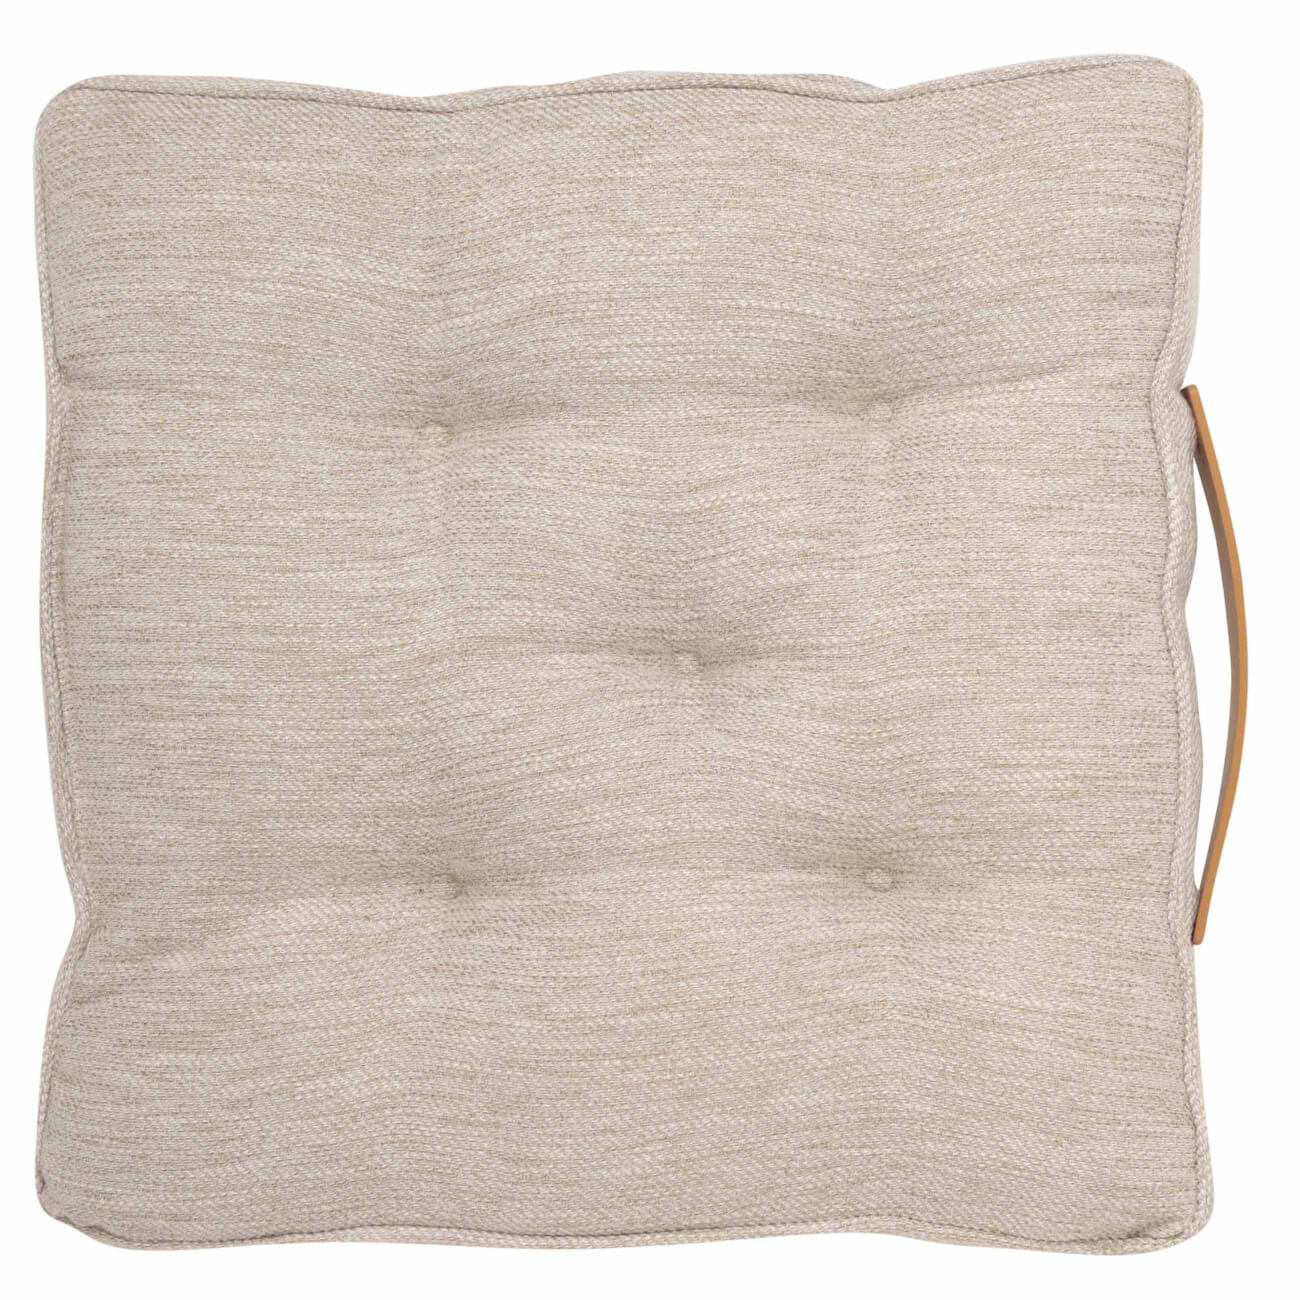 Подушка на стул, 40х40, с ручкой, полиэстер/искусственная кожа, квадратная, молочная, Chair pad